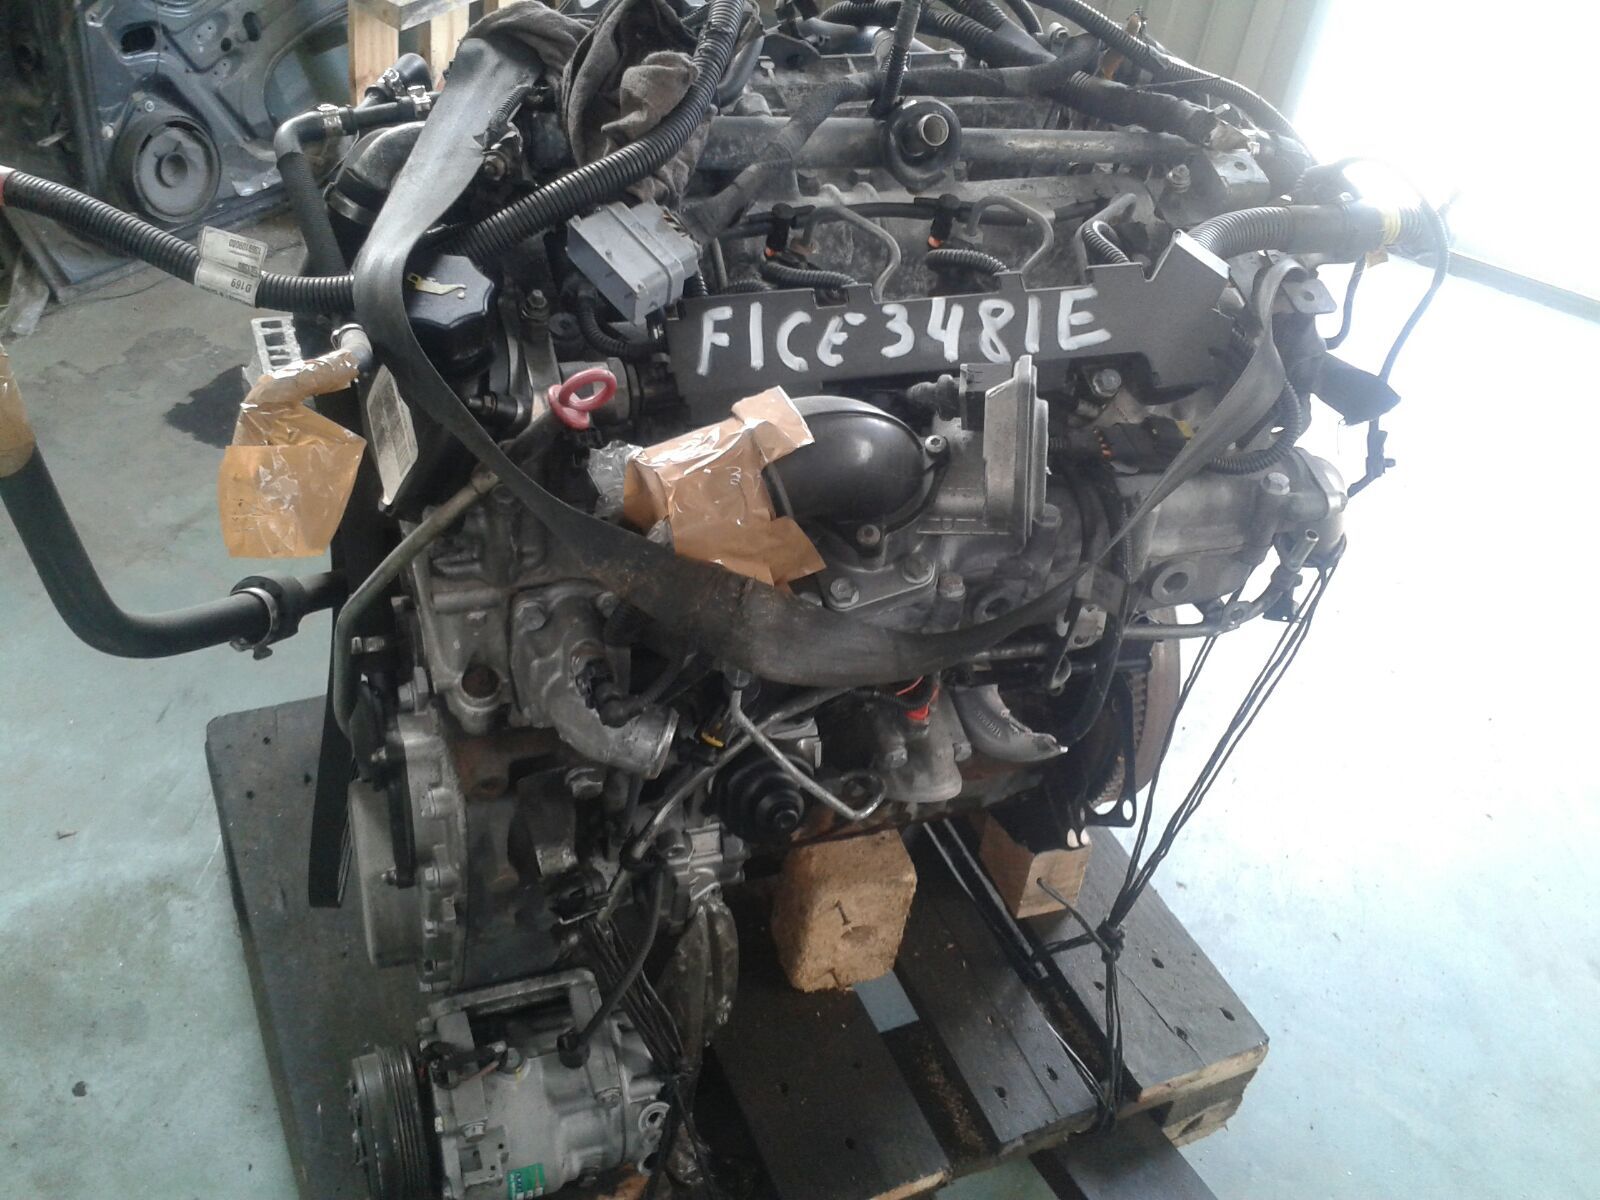 Motor Fiat Ducato 3.0 180 CV segunda mano diesel Ref F1CE3481E